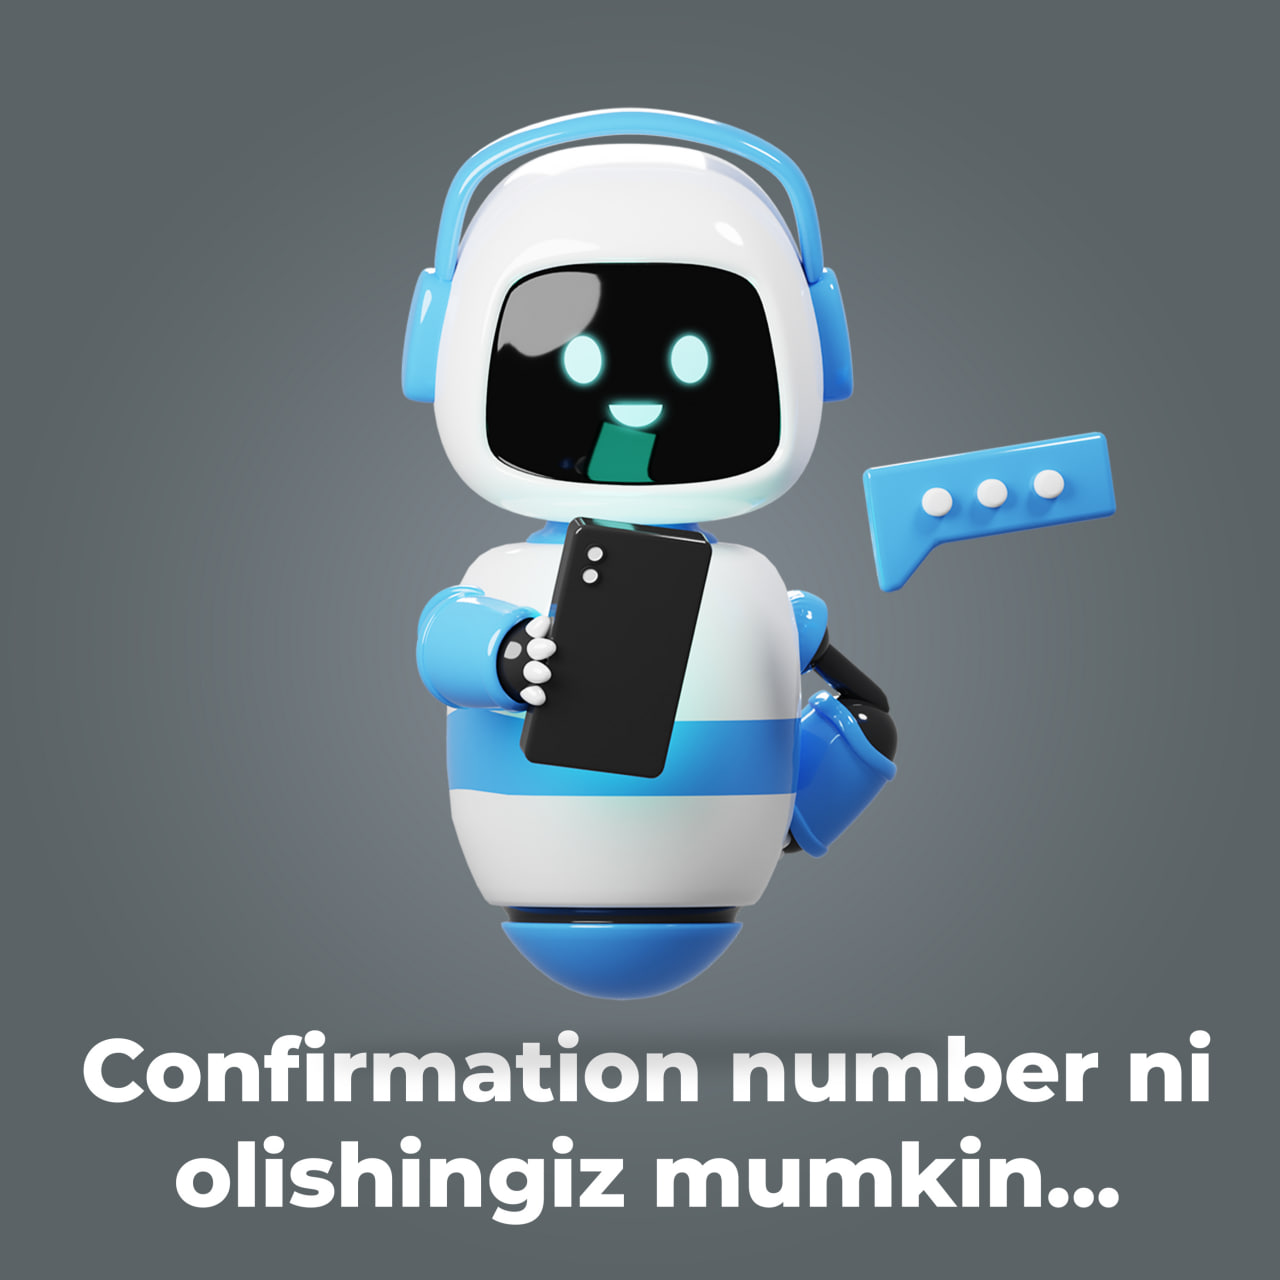 Confirmation numberni olish uchun qo'yidagi telegram botga murojaat qilib olishingiz mumkin.